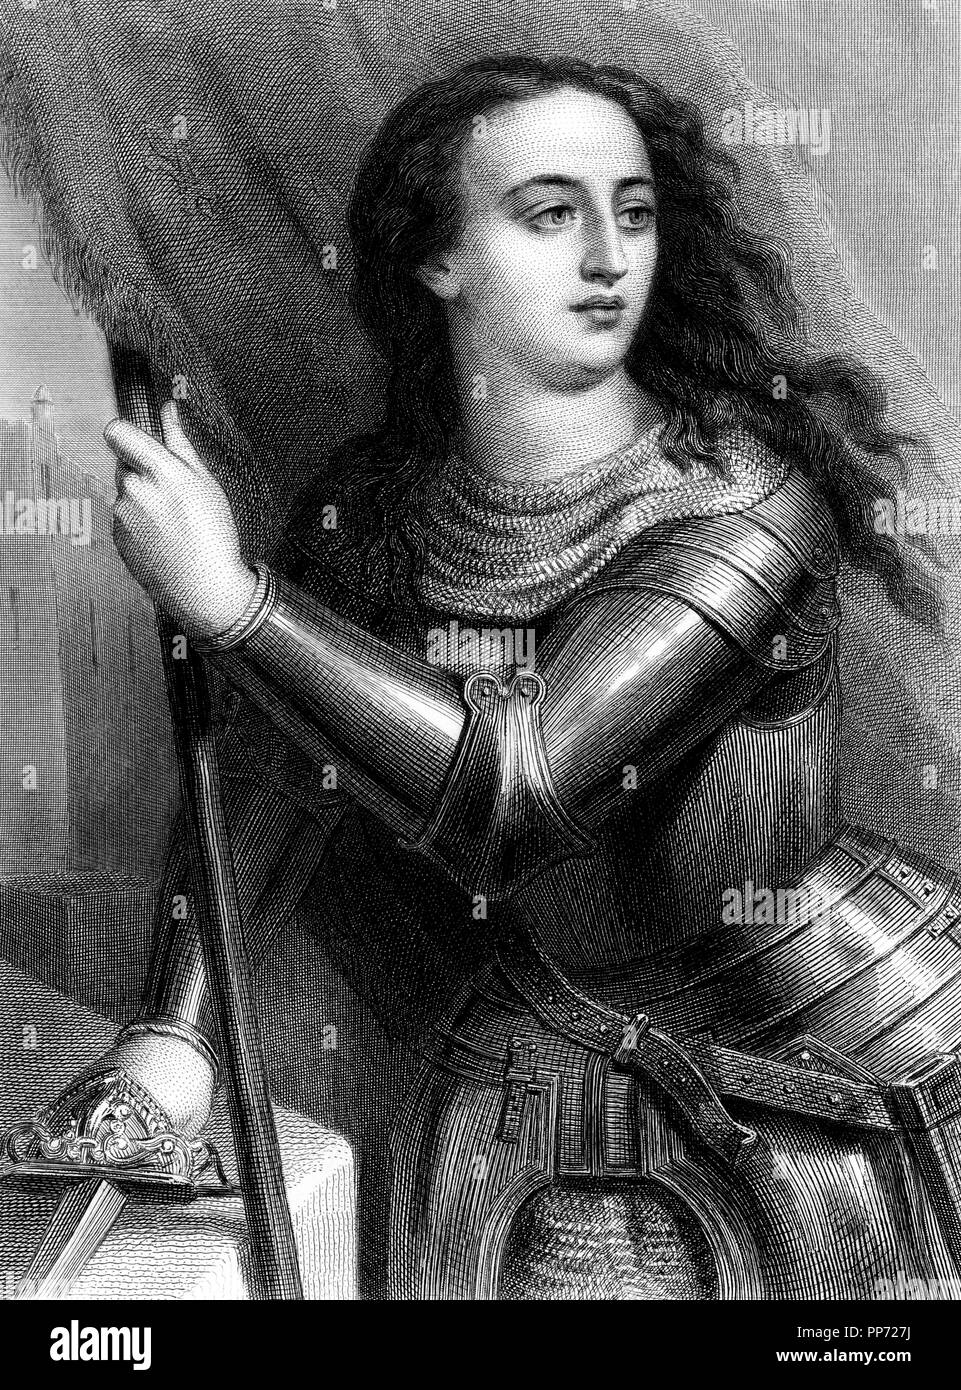 Santa Juana de Arco, la doncella de Orleans (1412-1431), heroína militar francesa. La gravure de 1873. Banque D'Images